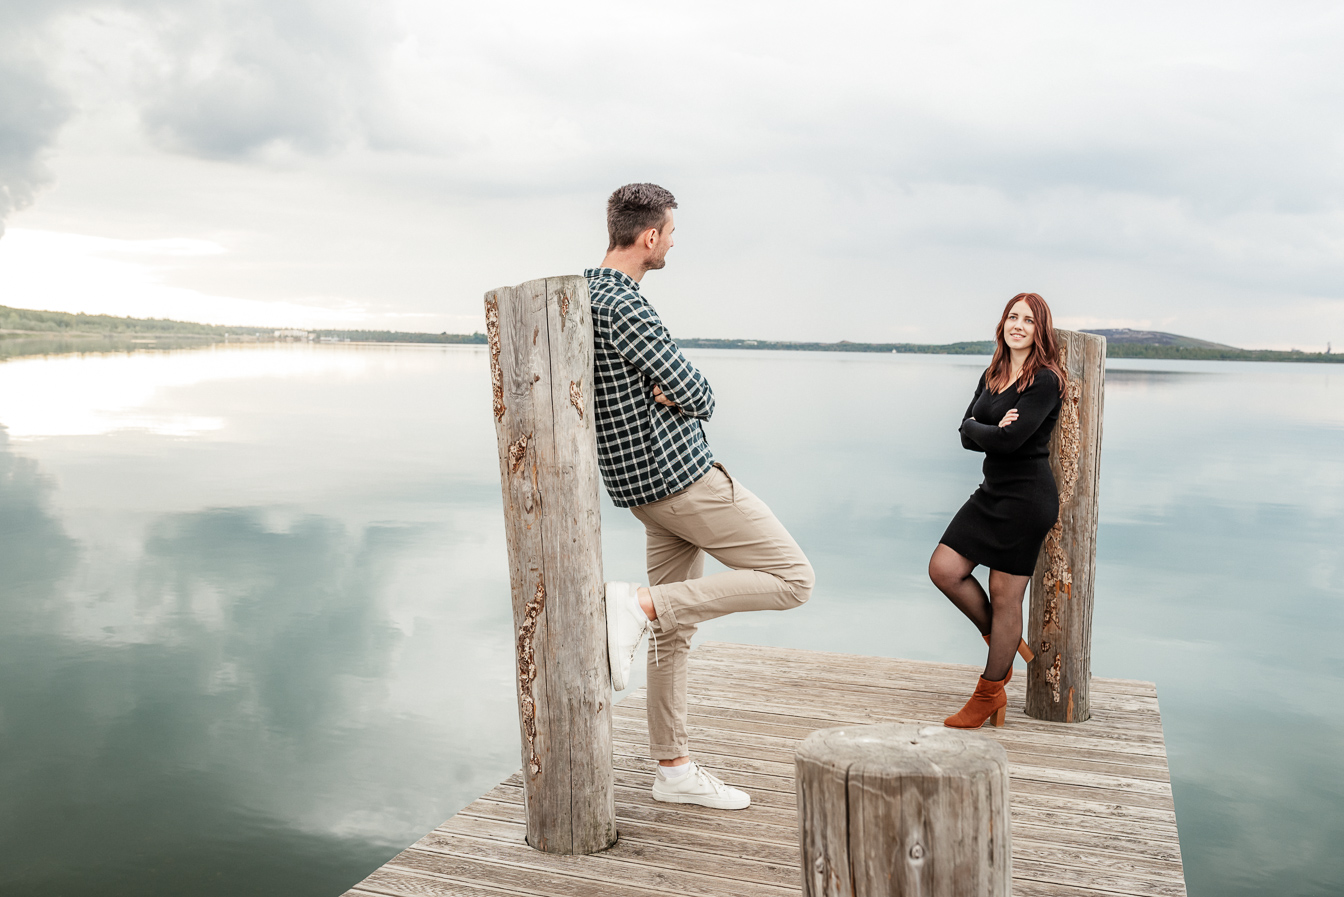 Pärchen auf einem Holzsteg am See bei romantishcen Paaraufnahmen